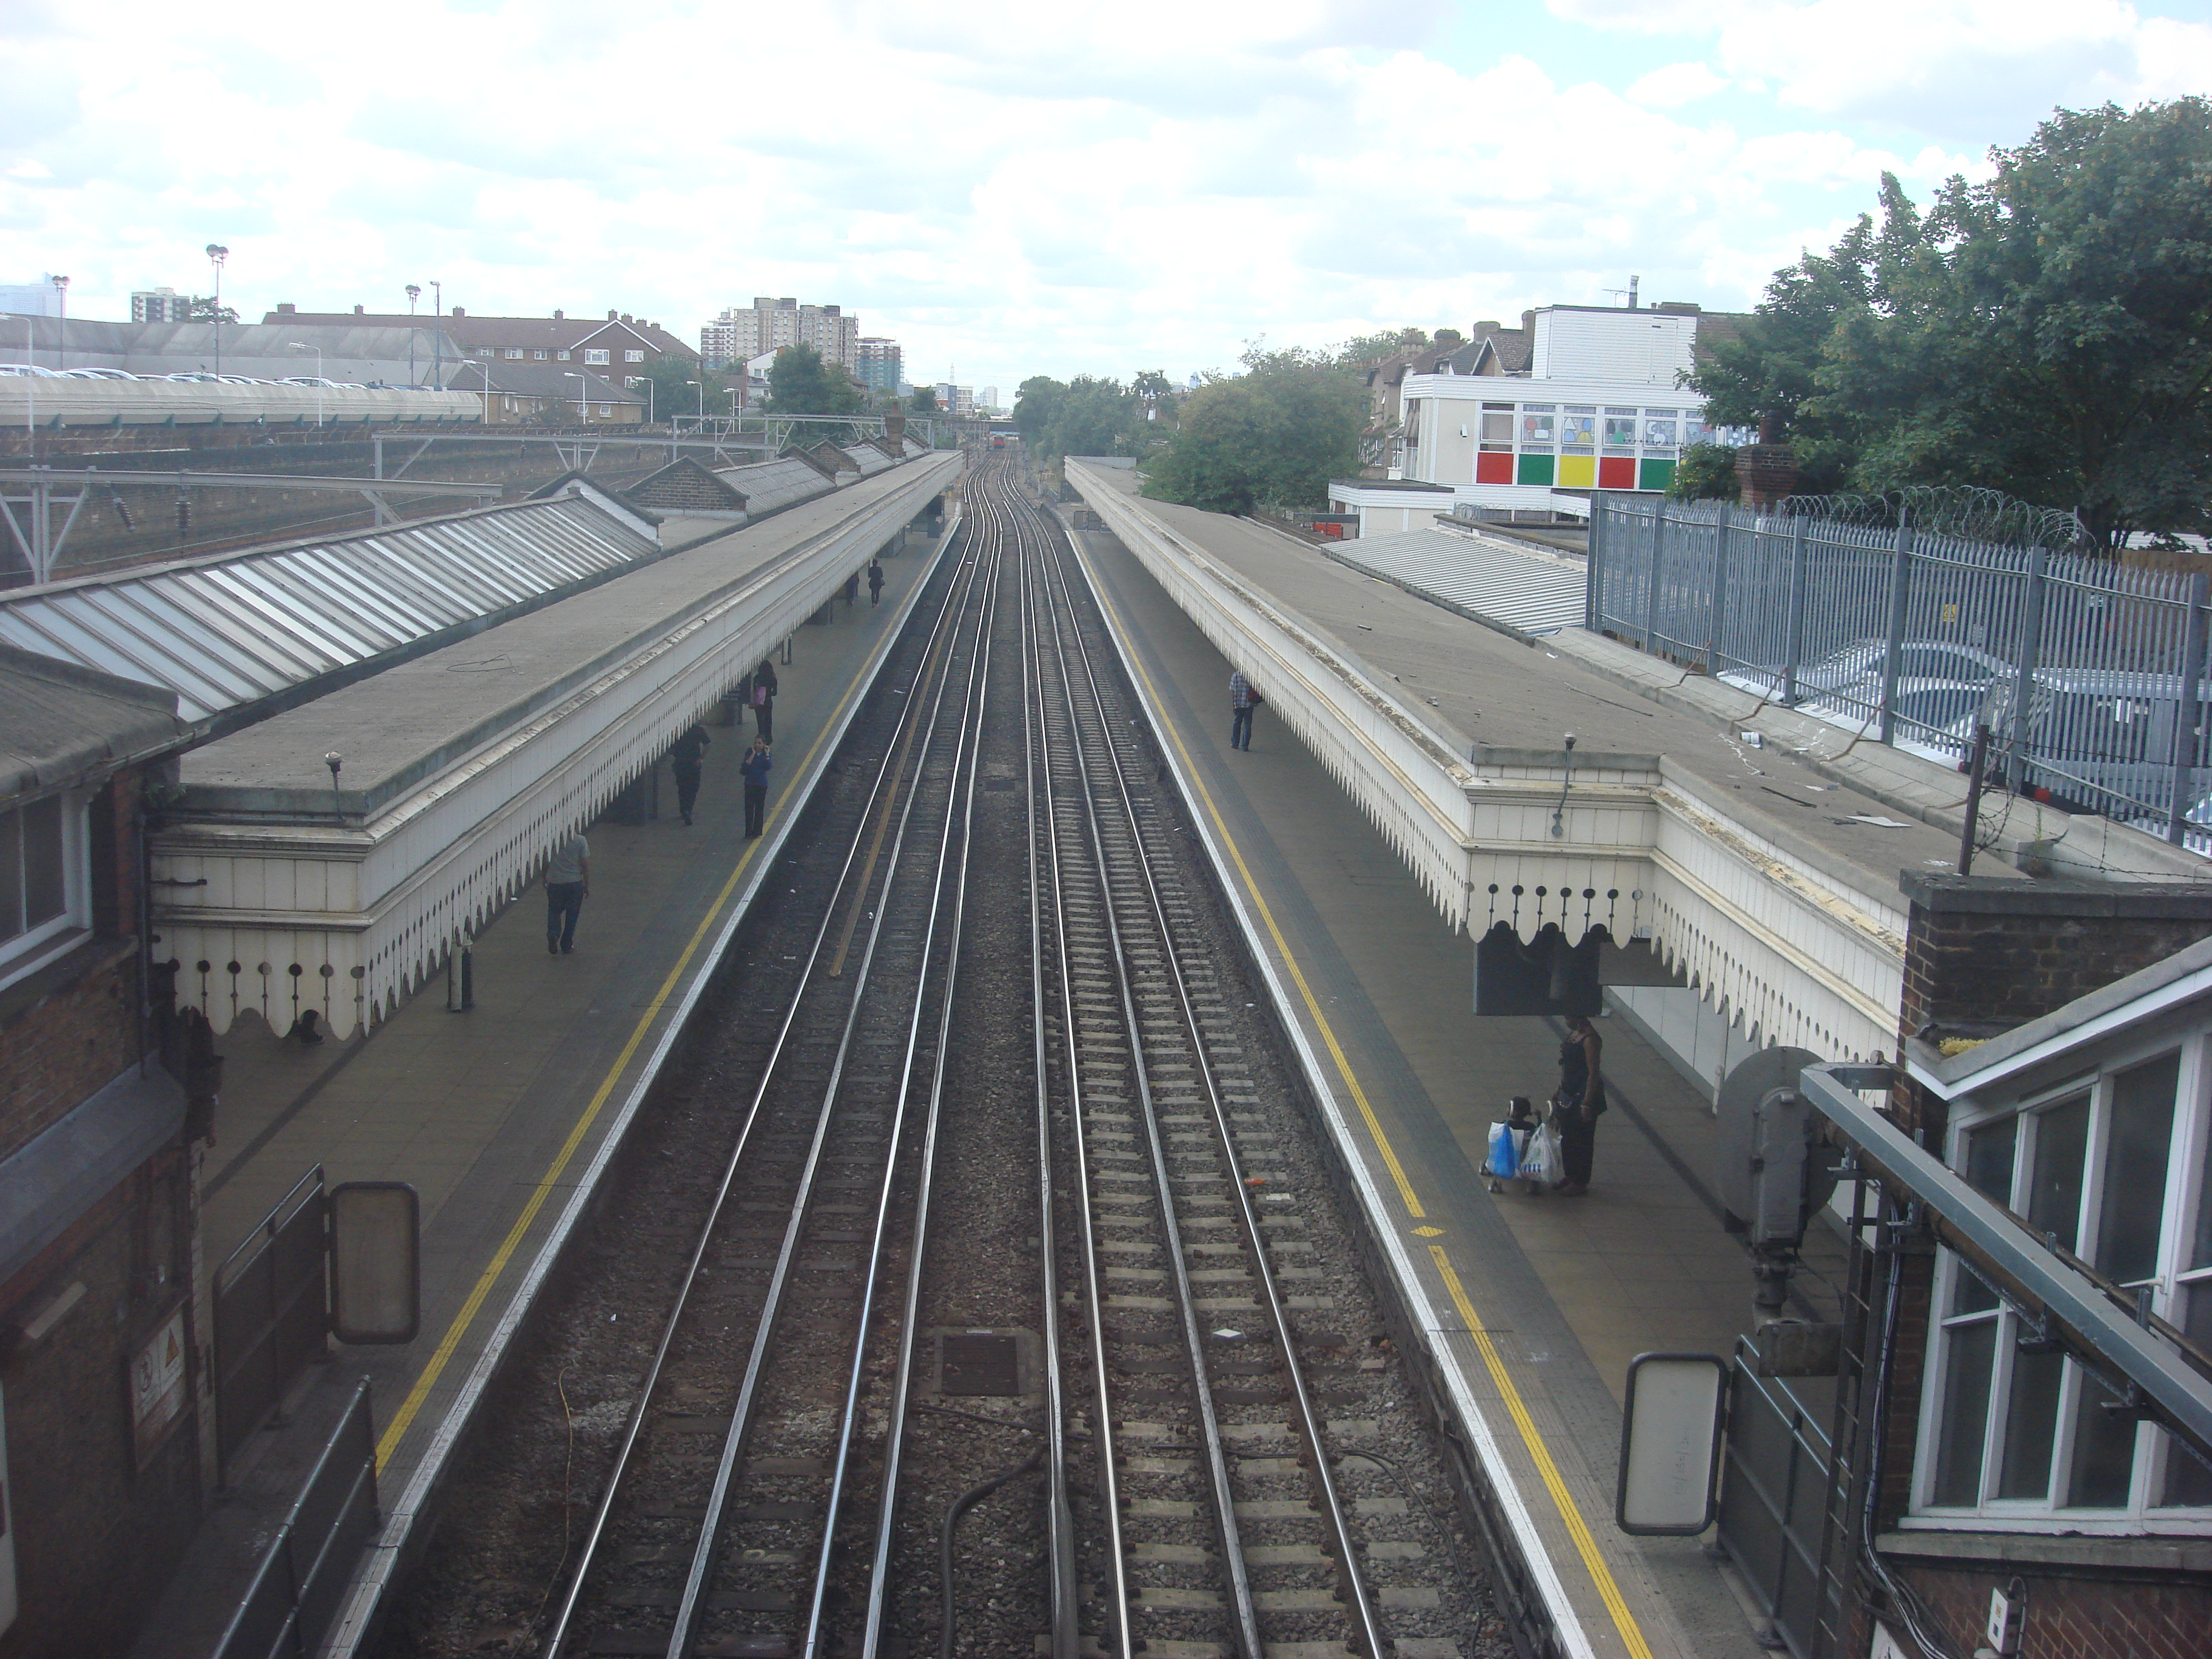 Upton Park Platform